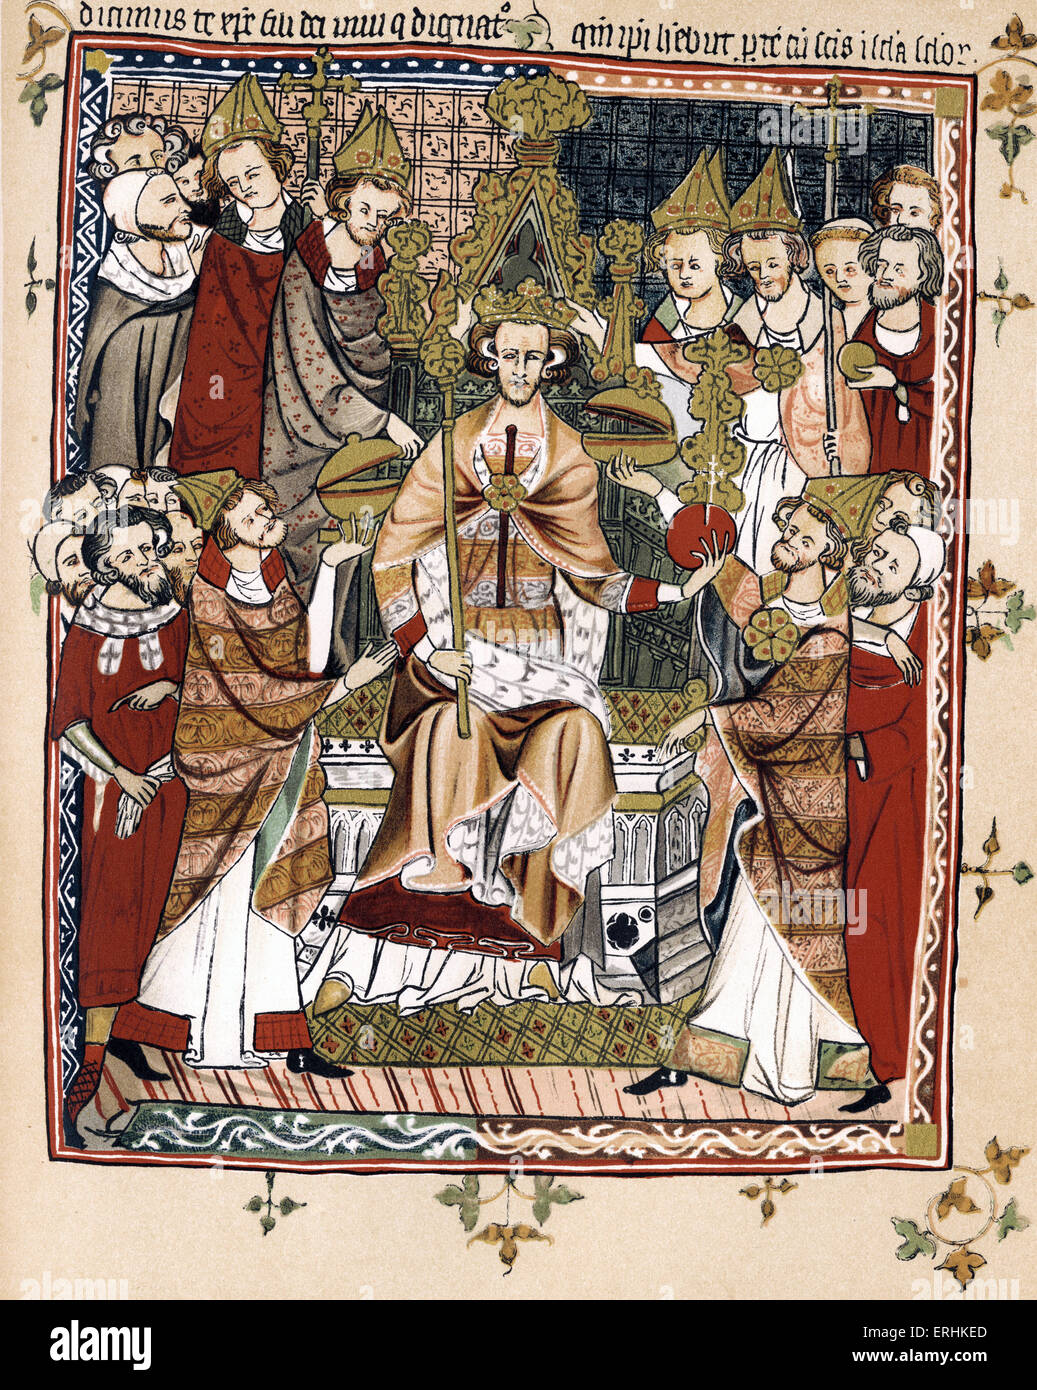 Il re Edoardo III - Incoronazione del Re Edward - inizi del XIV secolo - Inghilterra 13 Novembre 1312 - 21 giugno 1377. Illuminazione Foto Stock